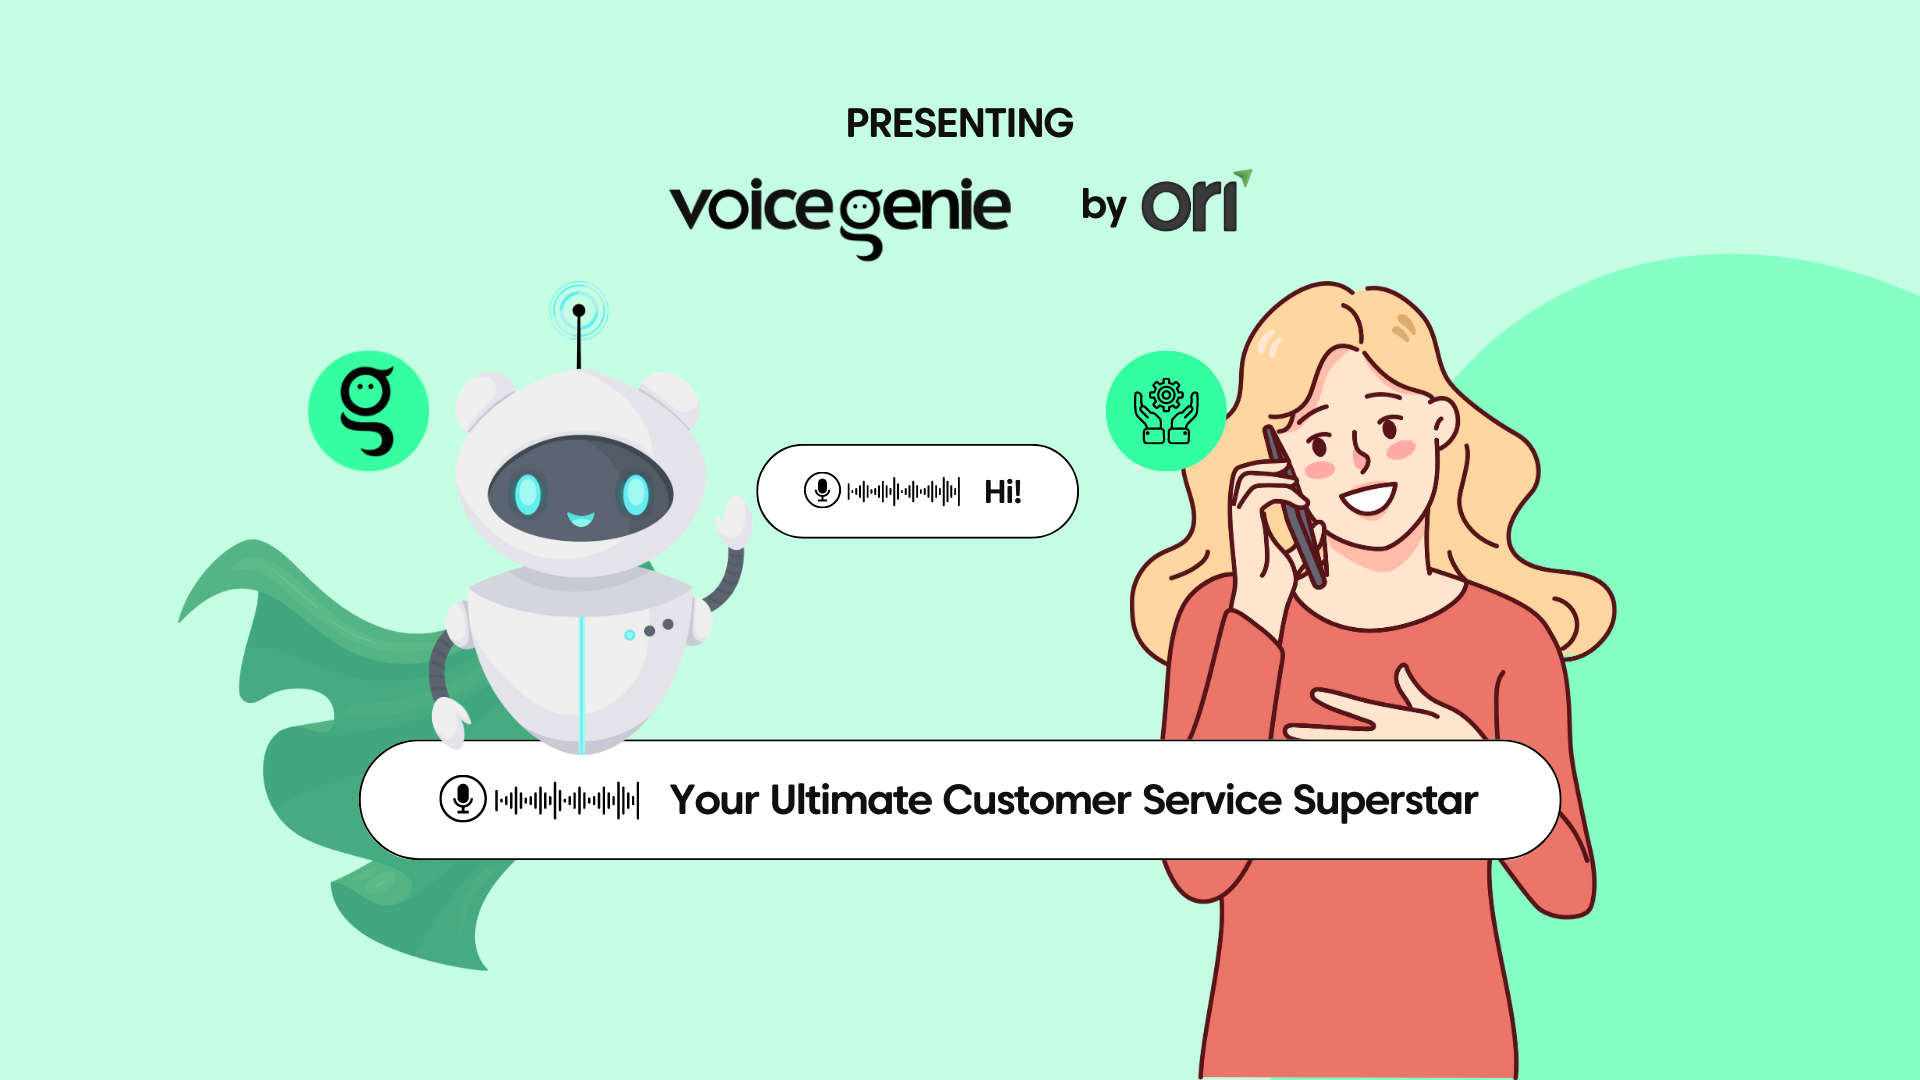 VoiceGenie by Ori - Your Customer Service Superstar